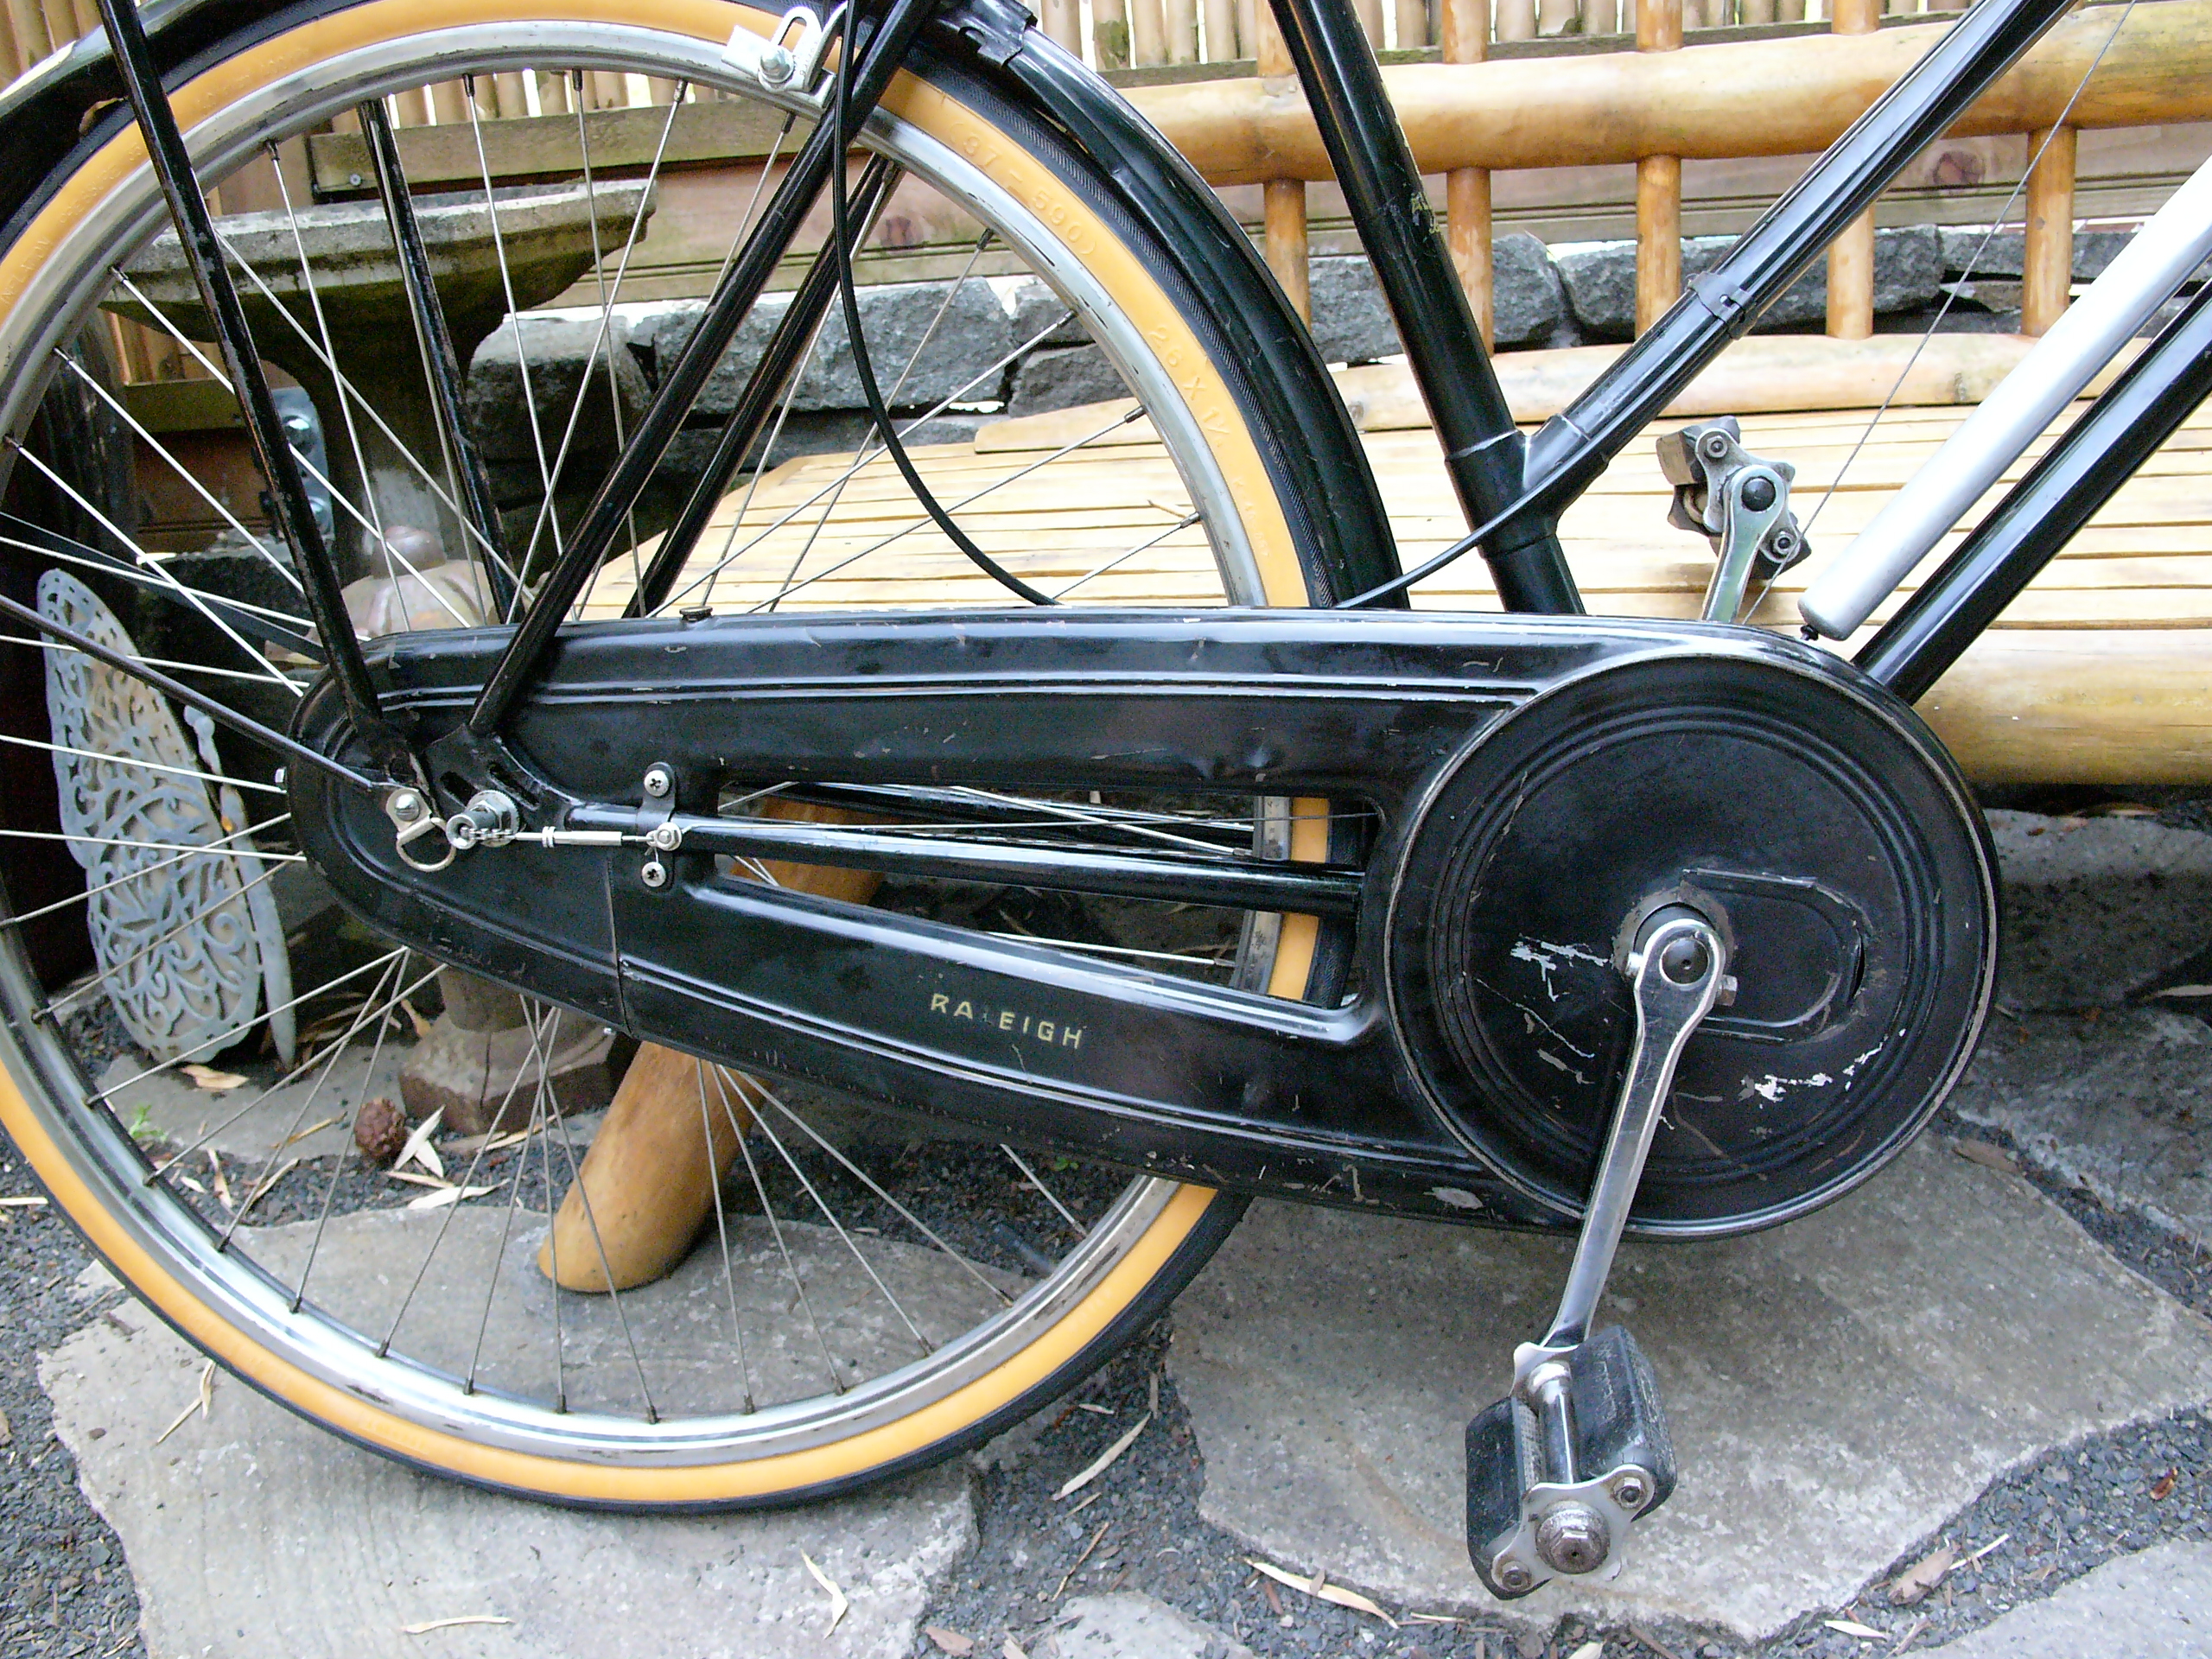 Risultati immagini per guard for chains bicycle 1920